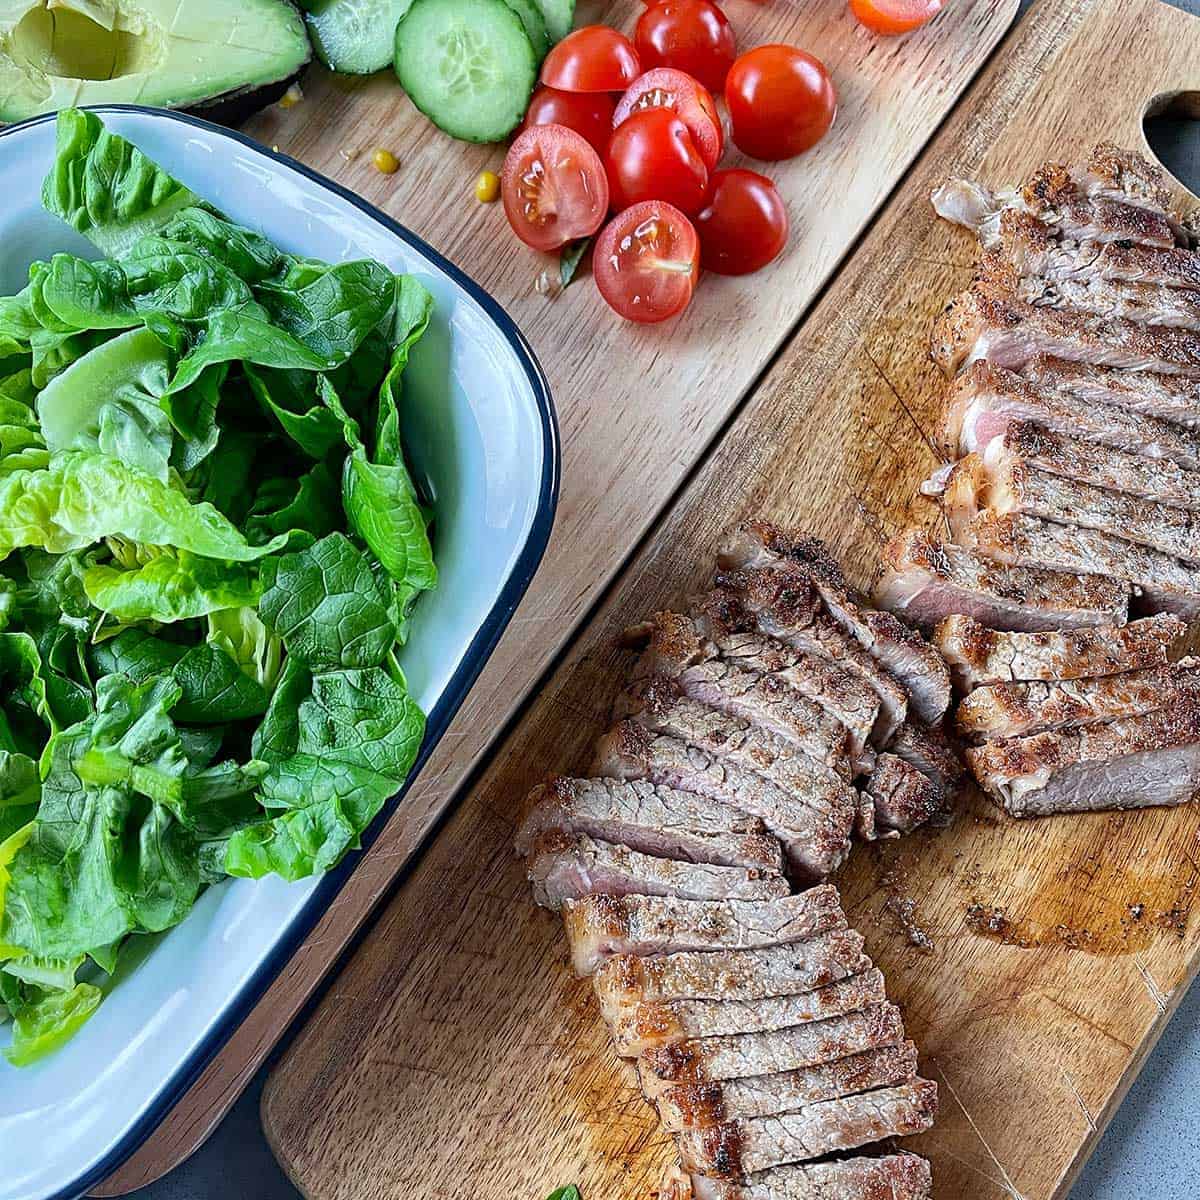 Sliced steak on a board.